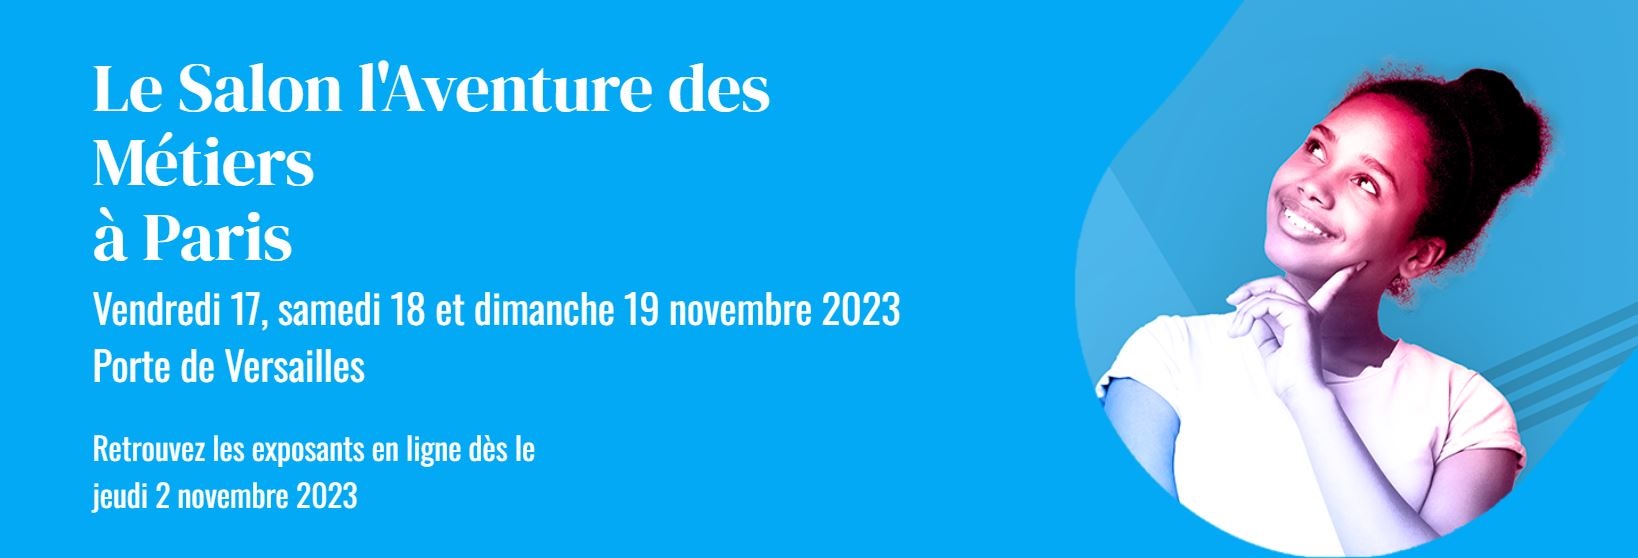 Salon "L'aventure des métiers" 2023